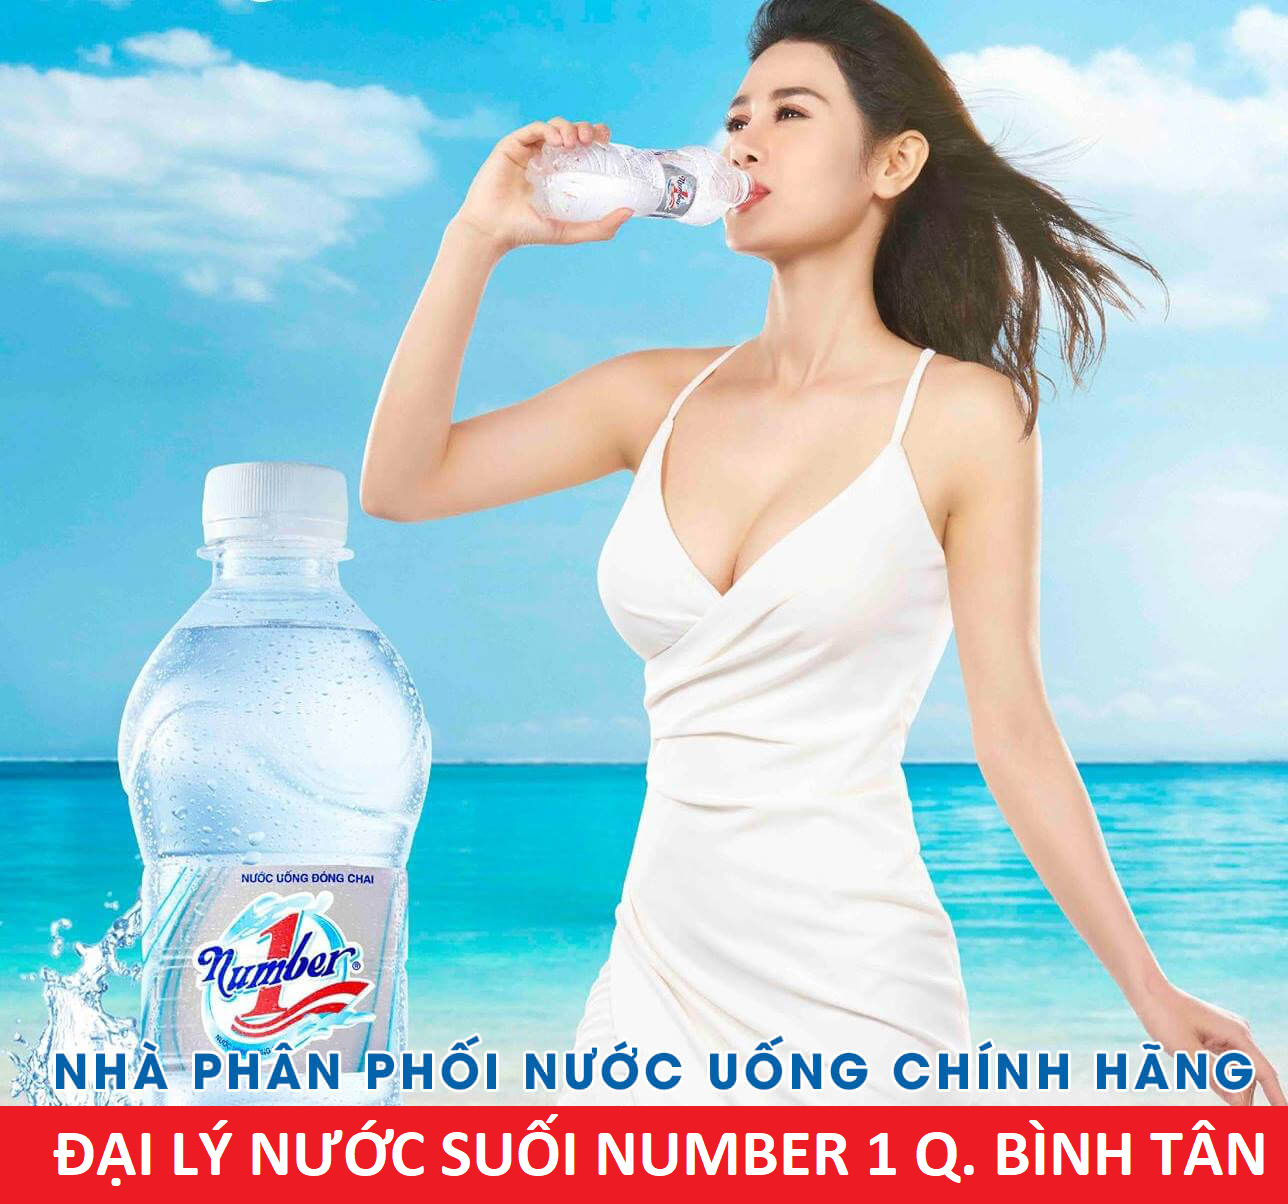 Đại lý nước suối Number 1 quận Bình Tân